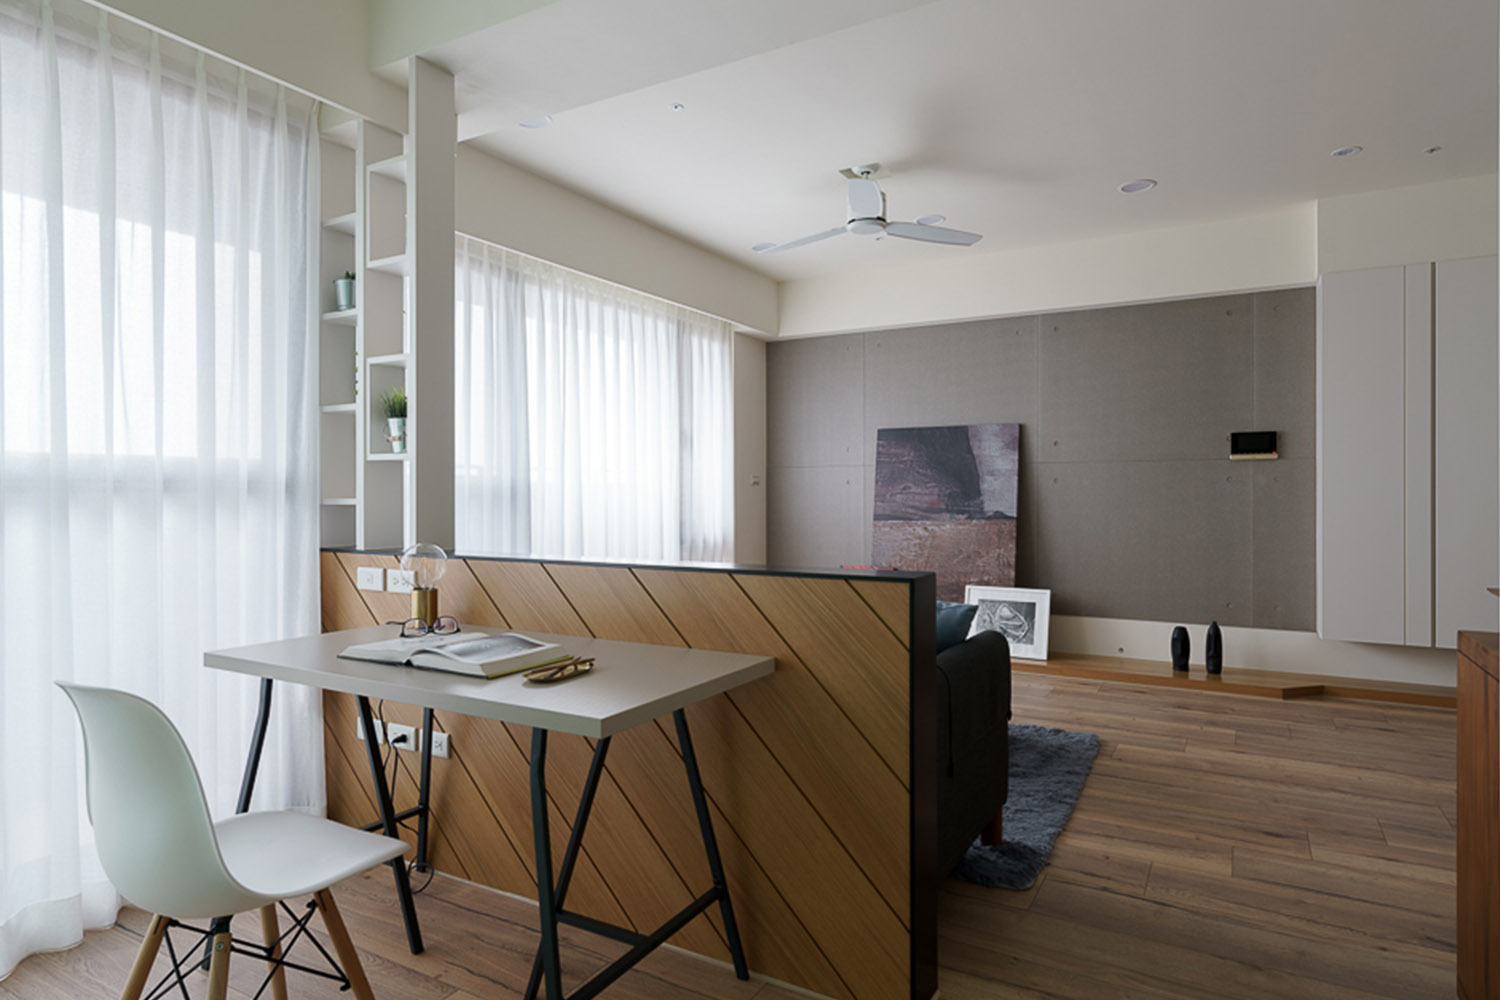 簡約北歐風格客廳裝潢搭配實木家具